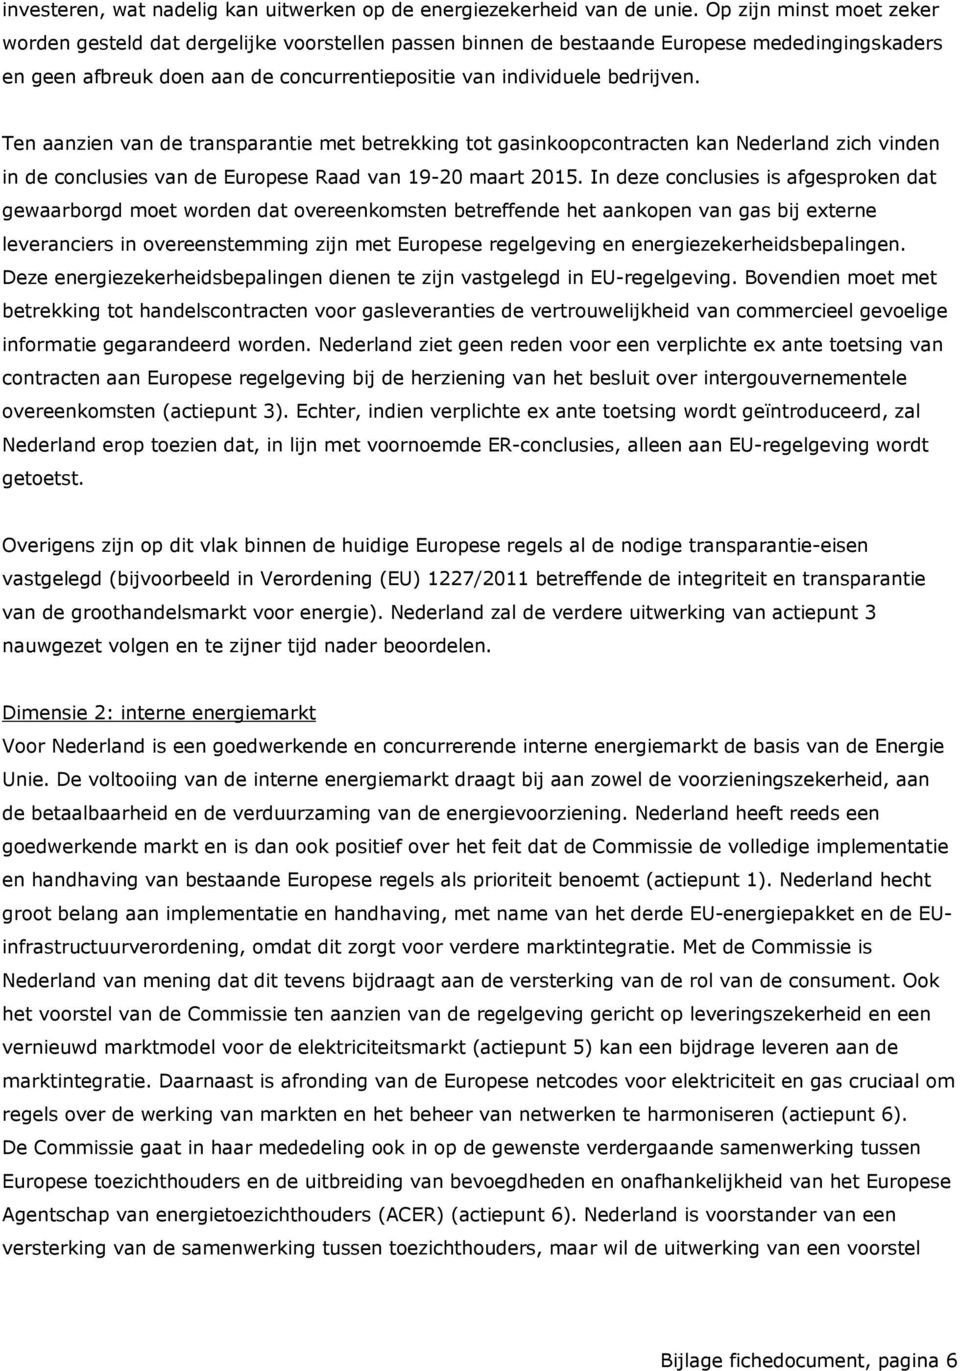 Ten aanzien van de transparantie met betrekking tot gasinkoopcontracten kan Nederland zich vinden in de conclusies van de Europese Raad van 19-20 maart 2015.